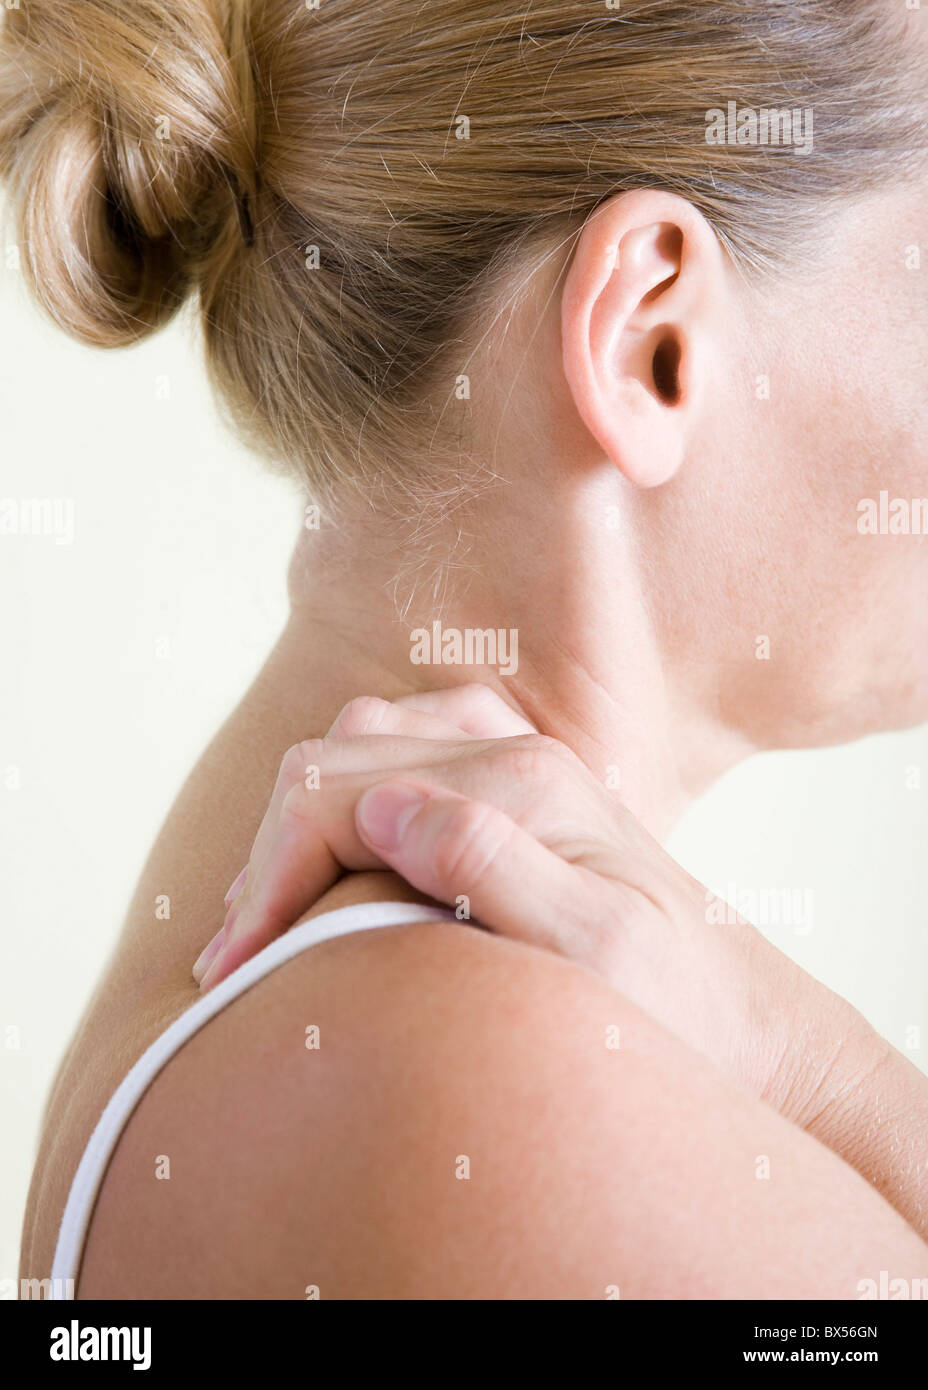 Shoulder pain Stock Photo